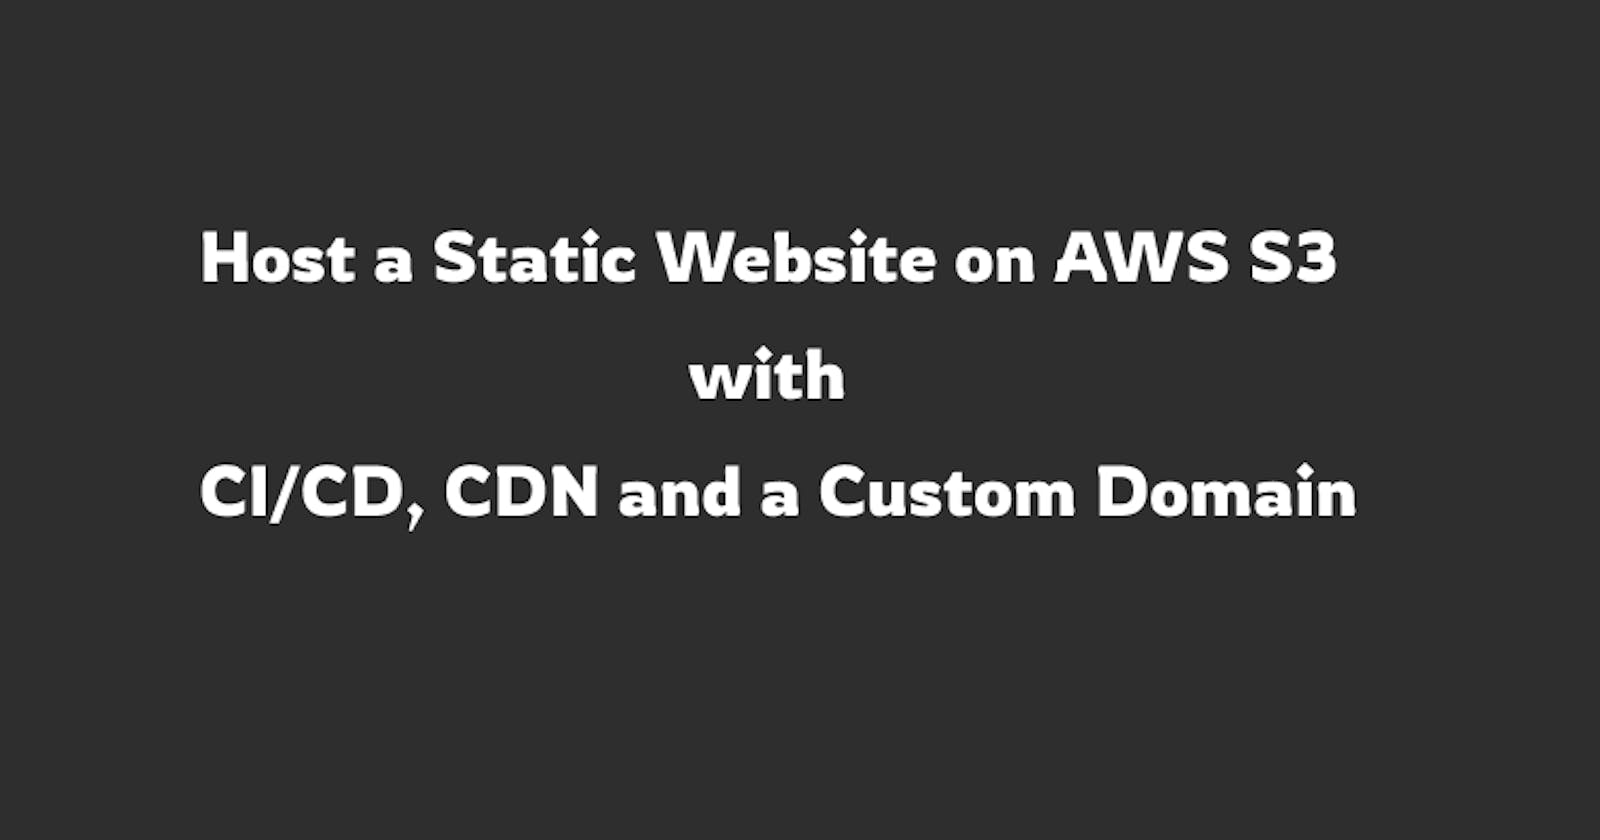 Host a Static Website on AWS S3 with CI/CD, CDN and a Custom Domain